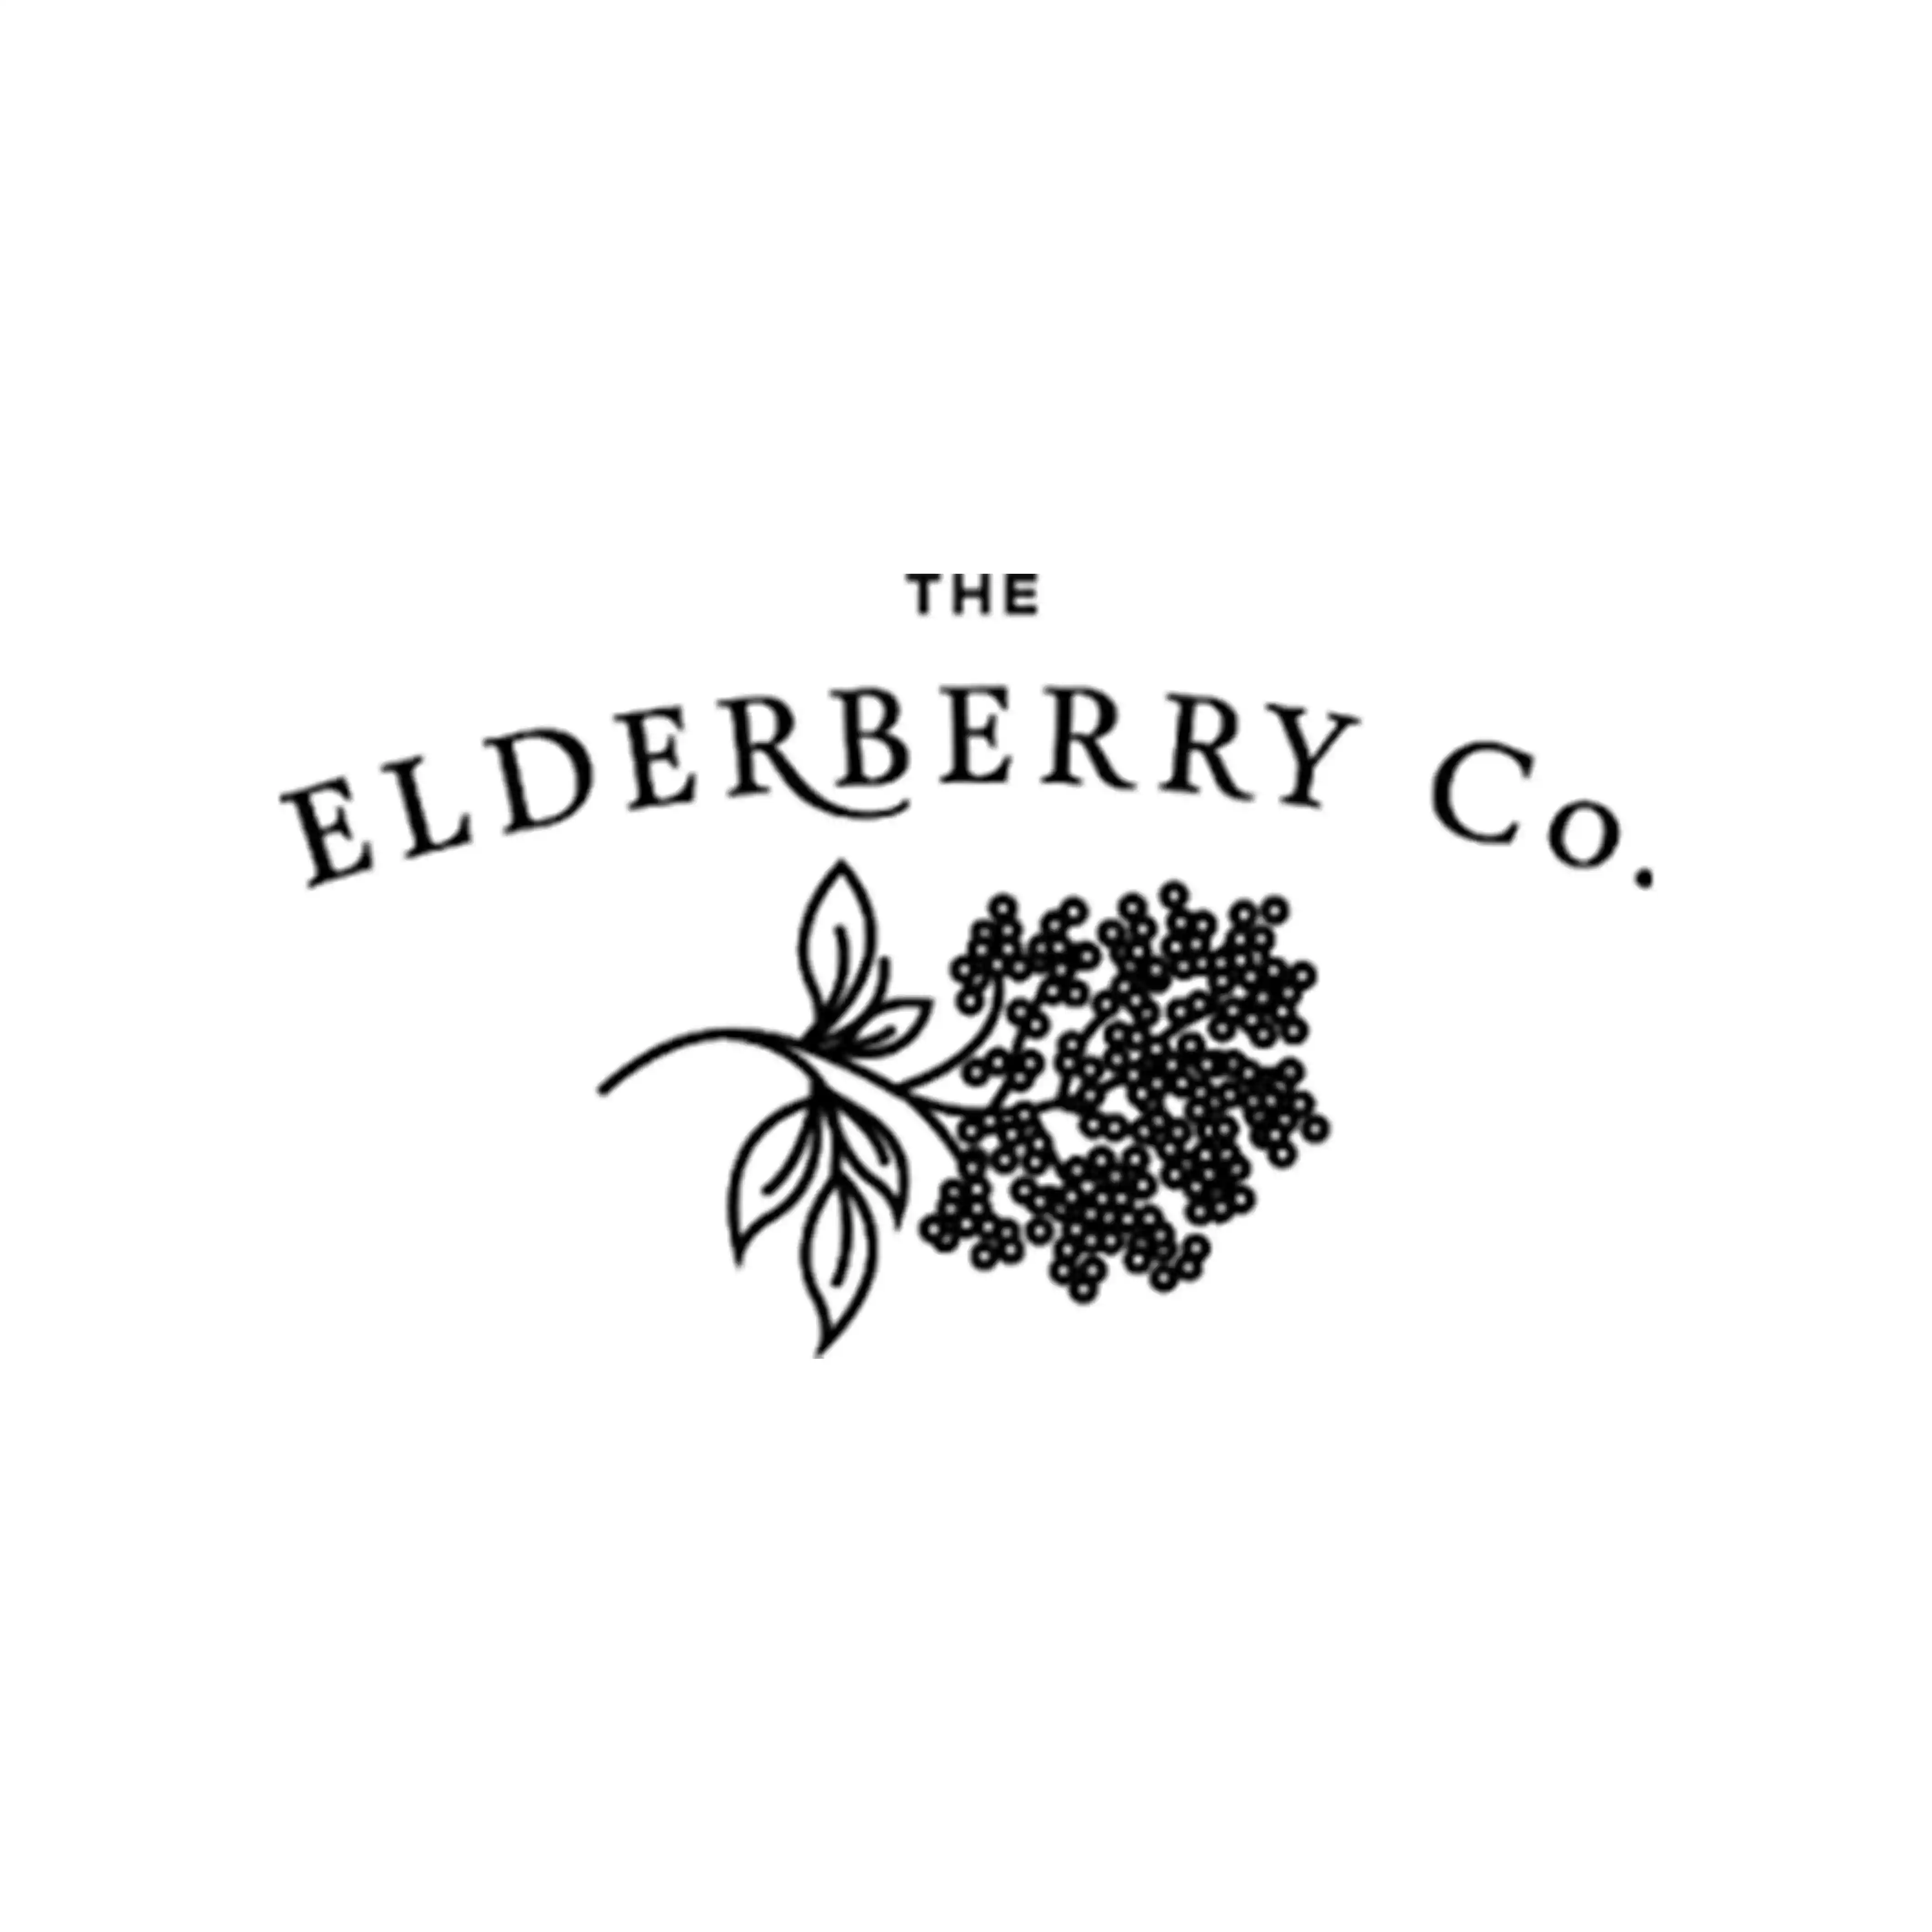 The ElderberryCo logo